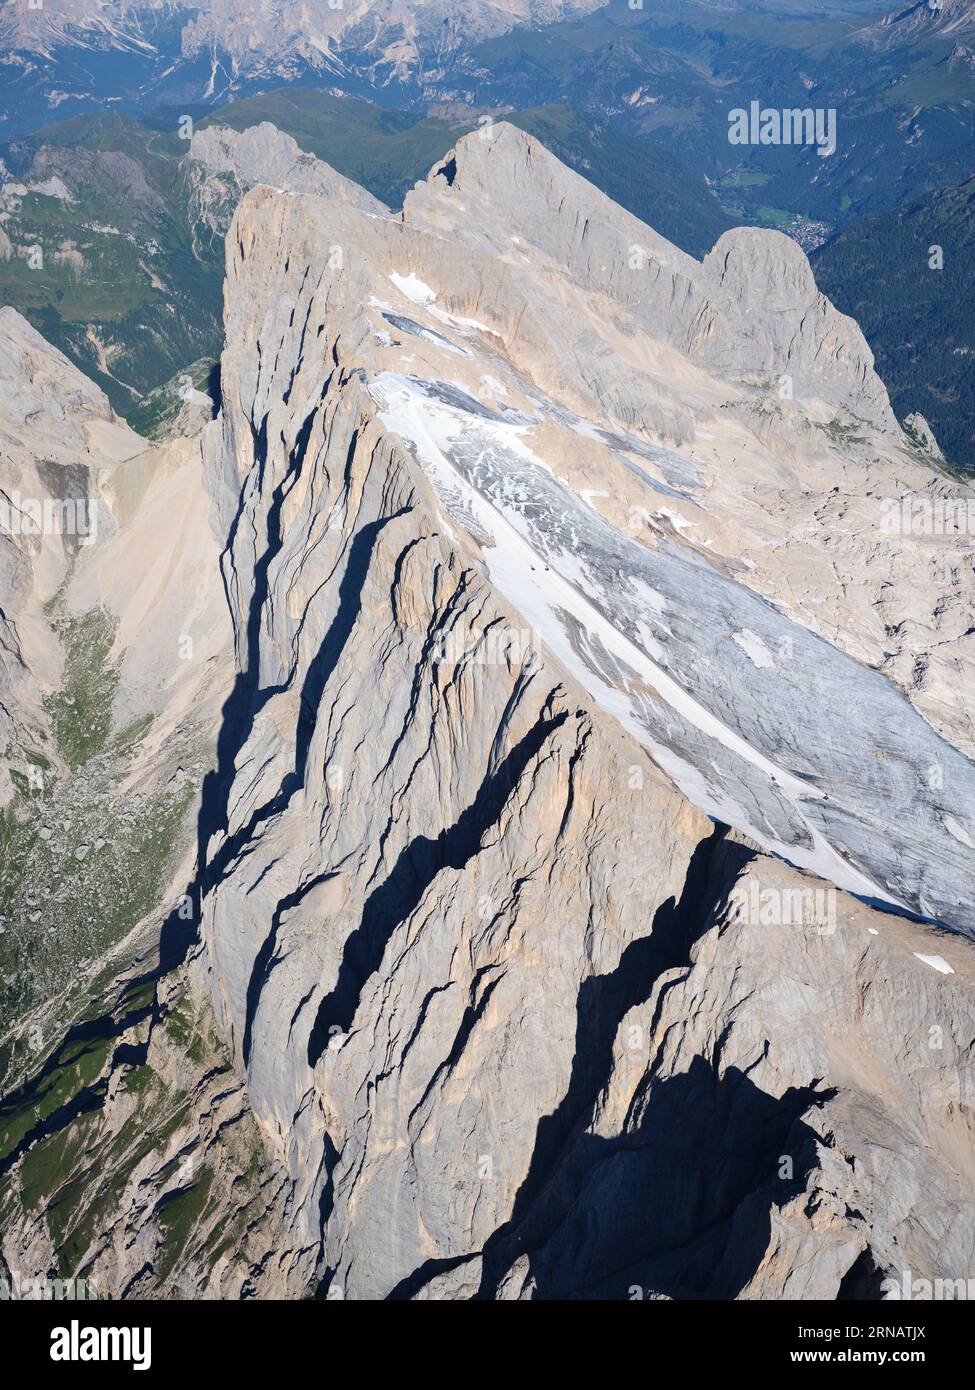 VISTA AEREA. Cima della Marmolada (3343 m) con la scogliera meridionale (in Veneto) e i ghiacciai settentrionali (in Trentino-alto Adige). Dolomiti, Italia. Foto Stock